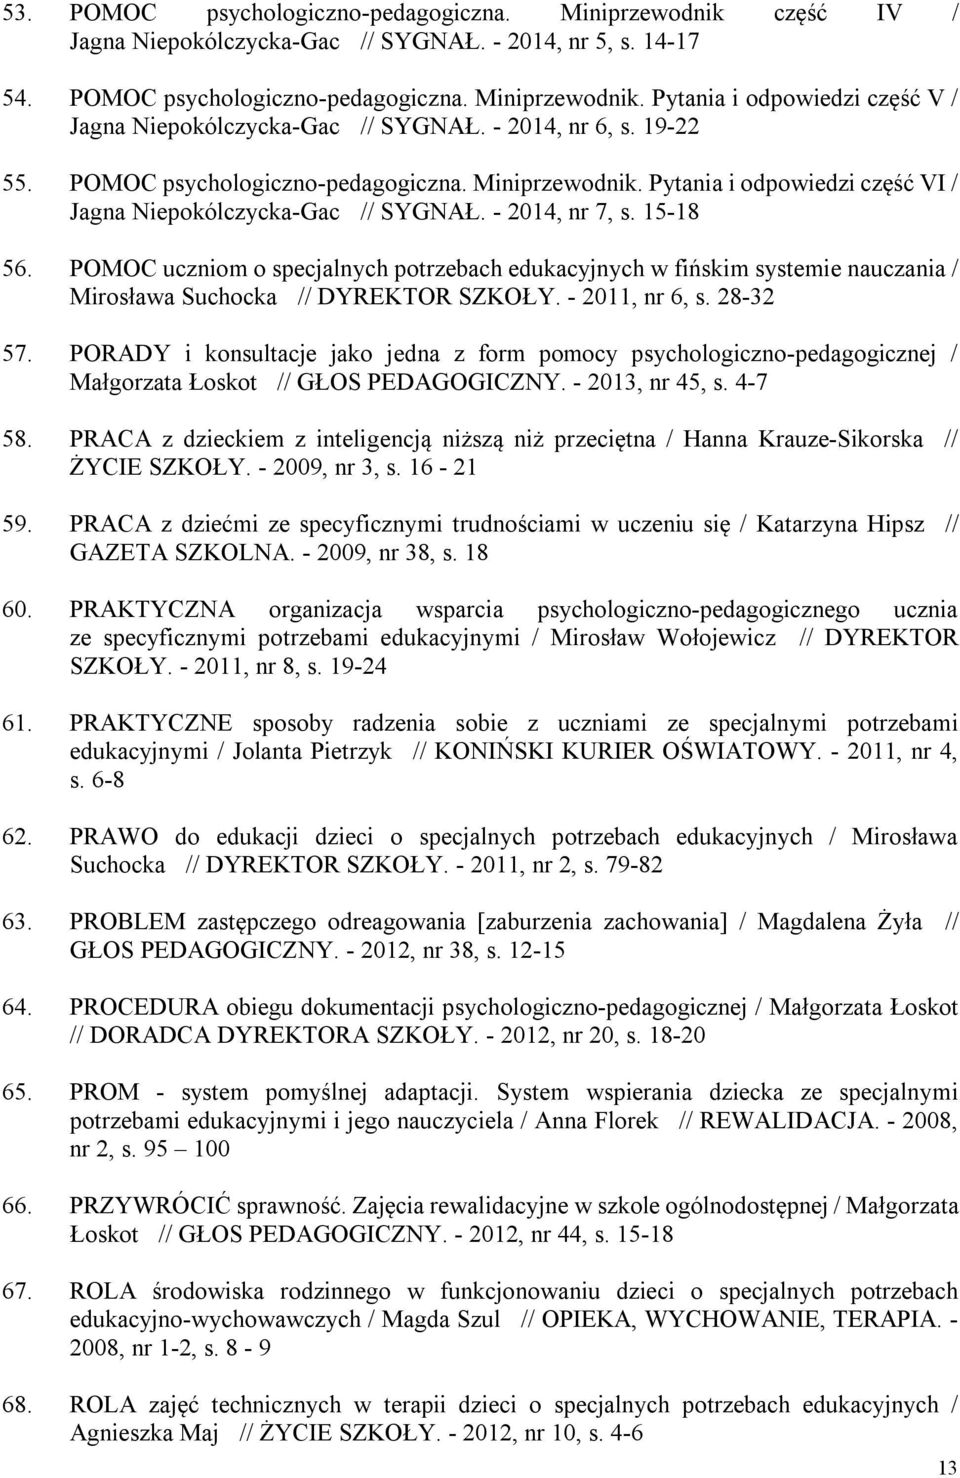 POMOC uczniom o specjalnych potrzebach edukacyjnych w fińskim systemie nauczania / Mirosława Suchocka // DYREKTOR SZKOŁY. - 2011, nr 6, s. 28-32 57.